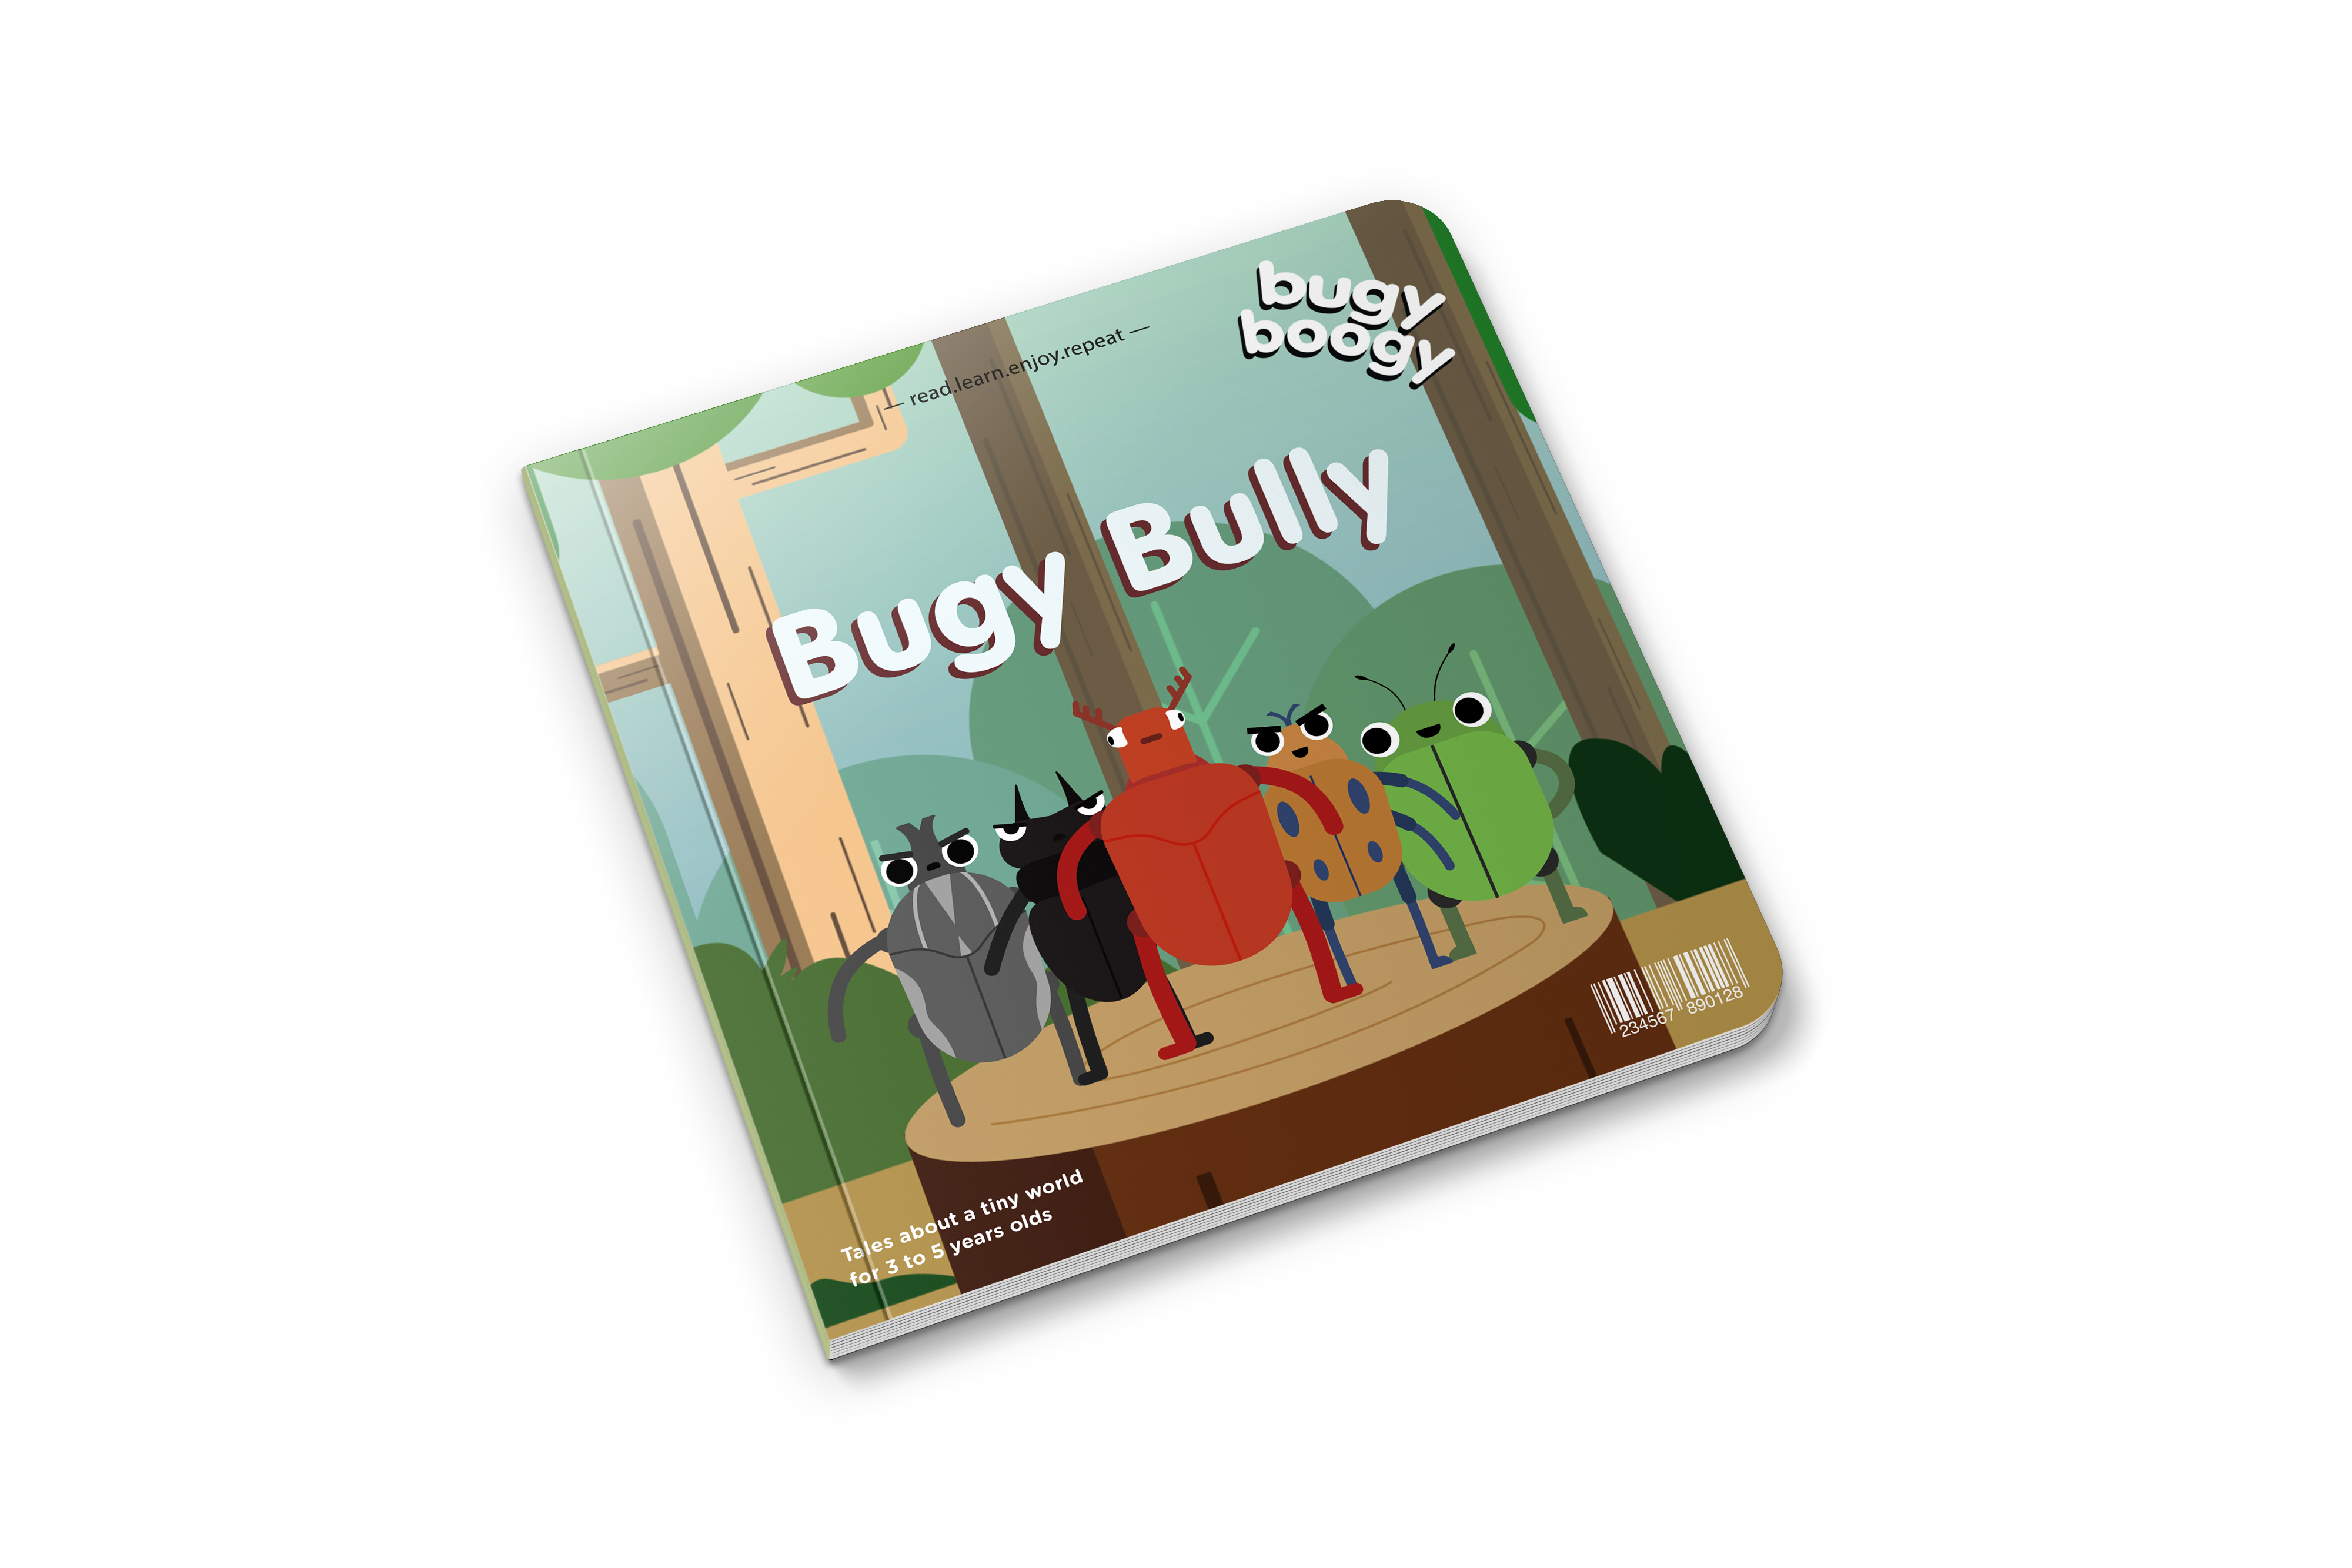 libro Bugy Bully